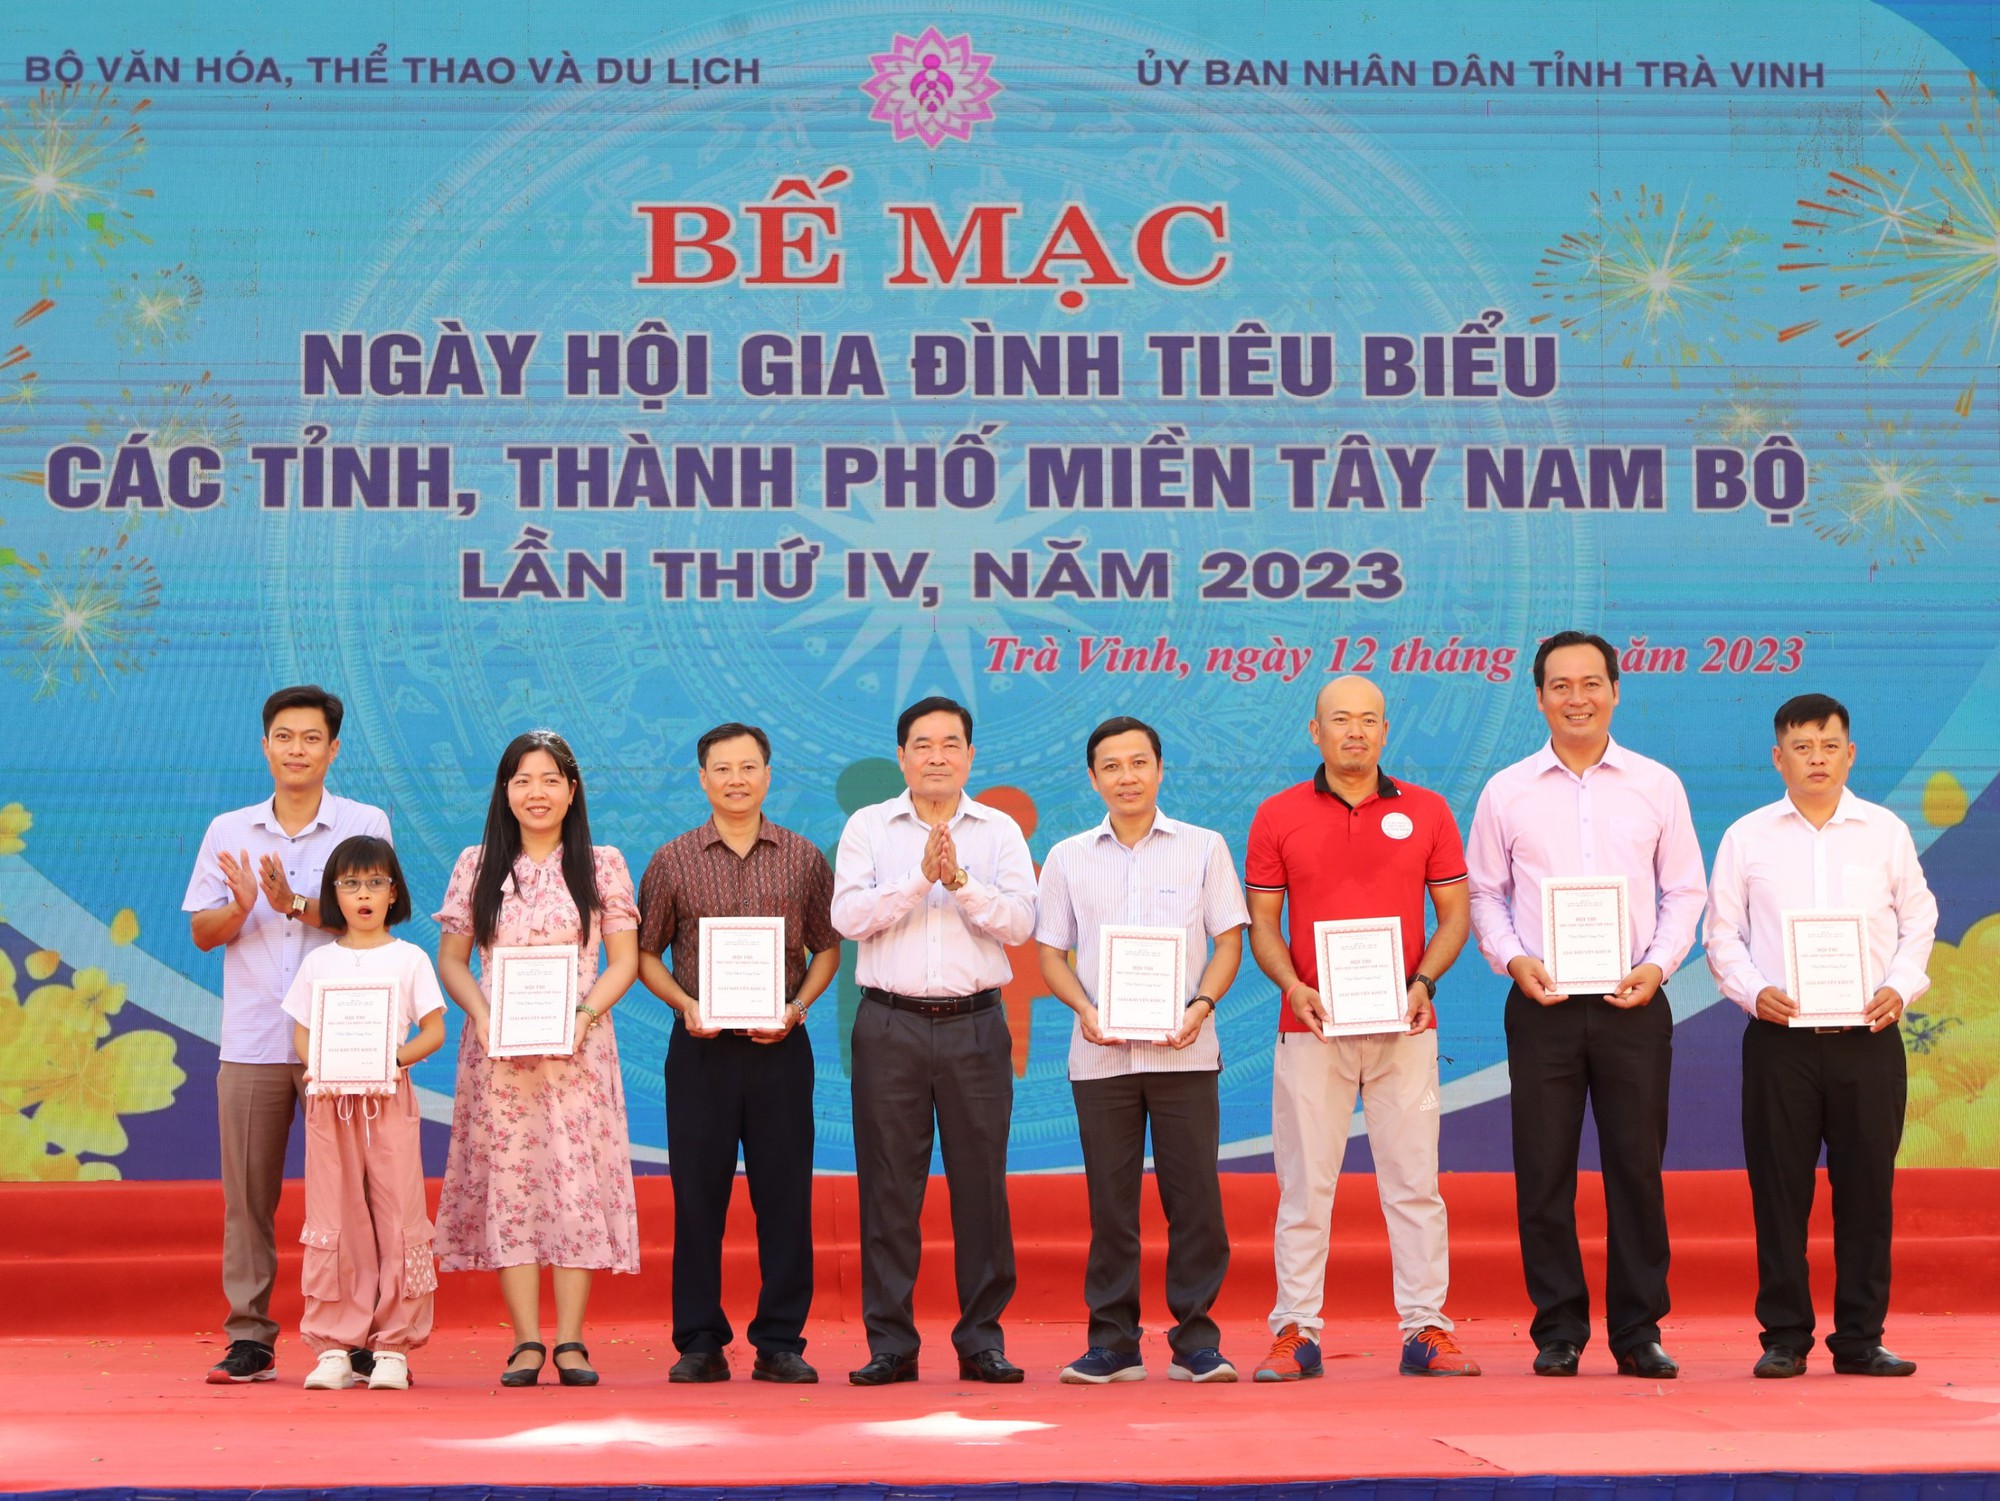 Bế mạc và trao giải Ngày hội Gia đình tiêu biểu miền Tây Nam Bộ - Ảnh 13.